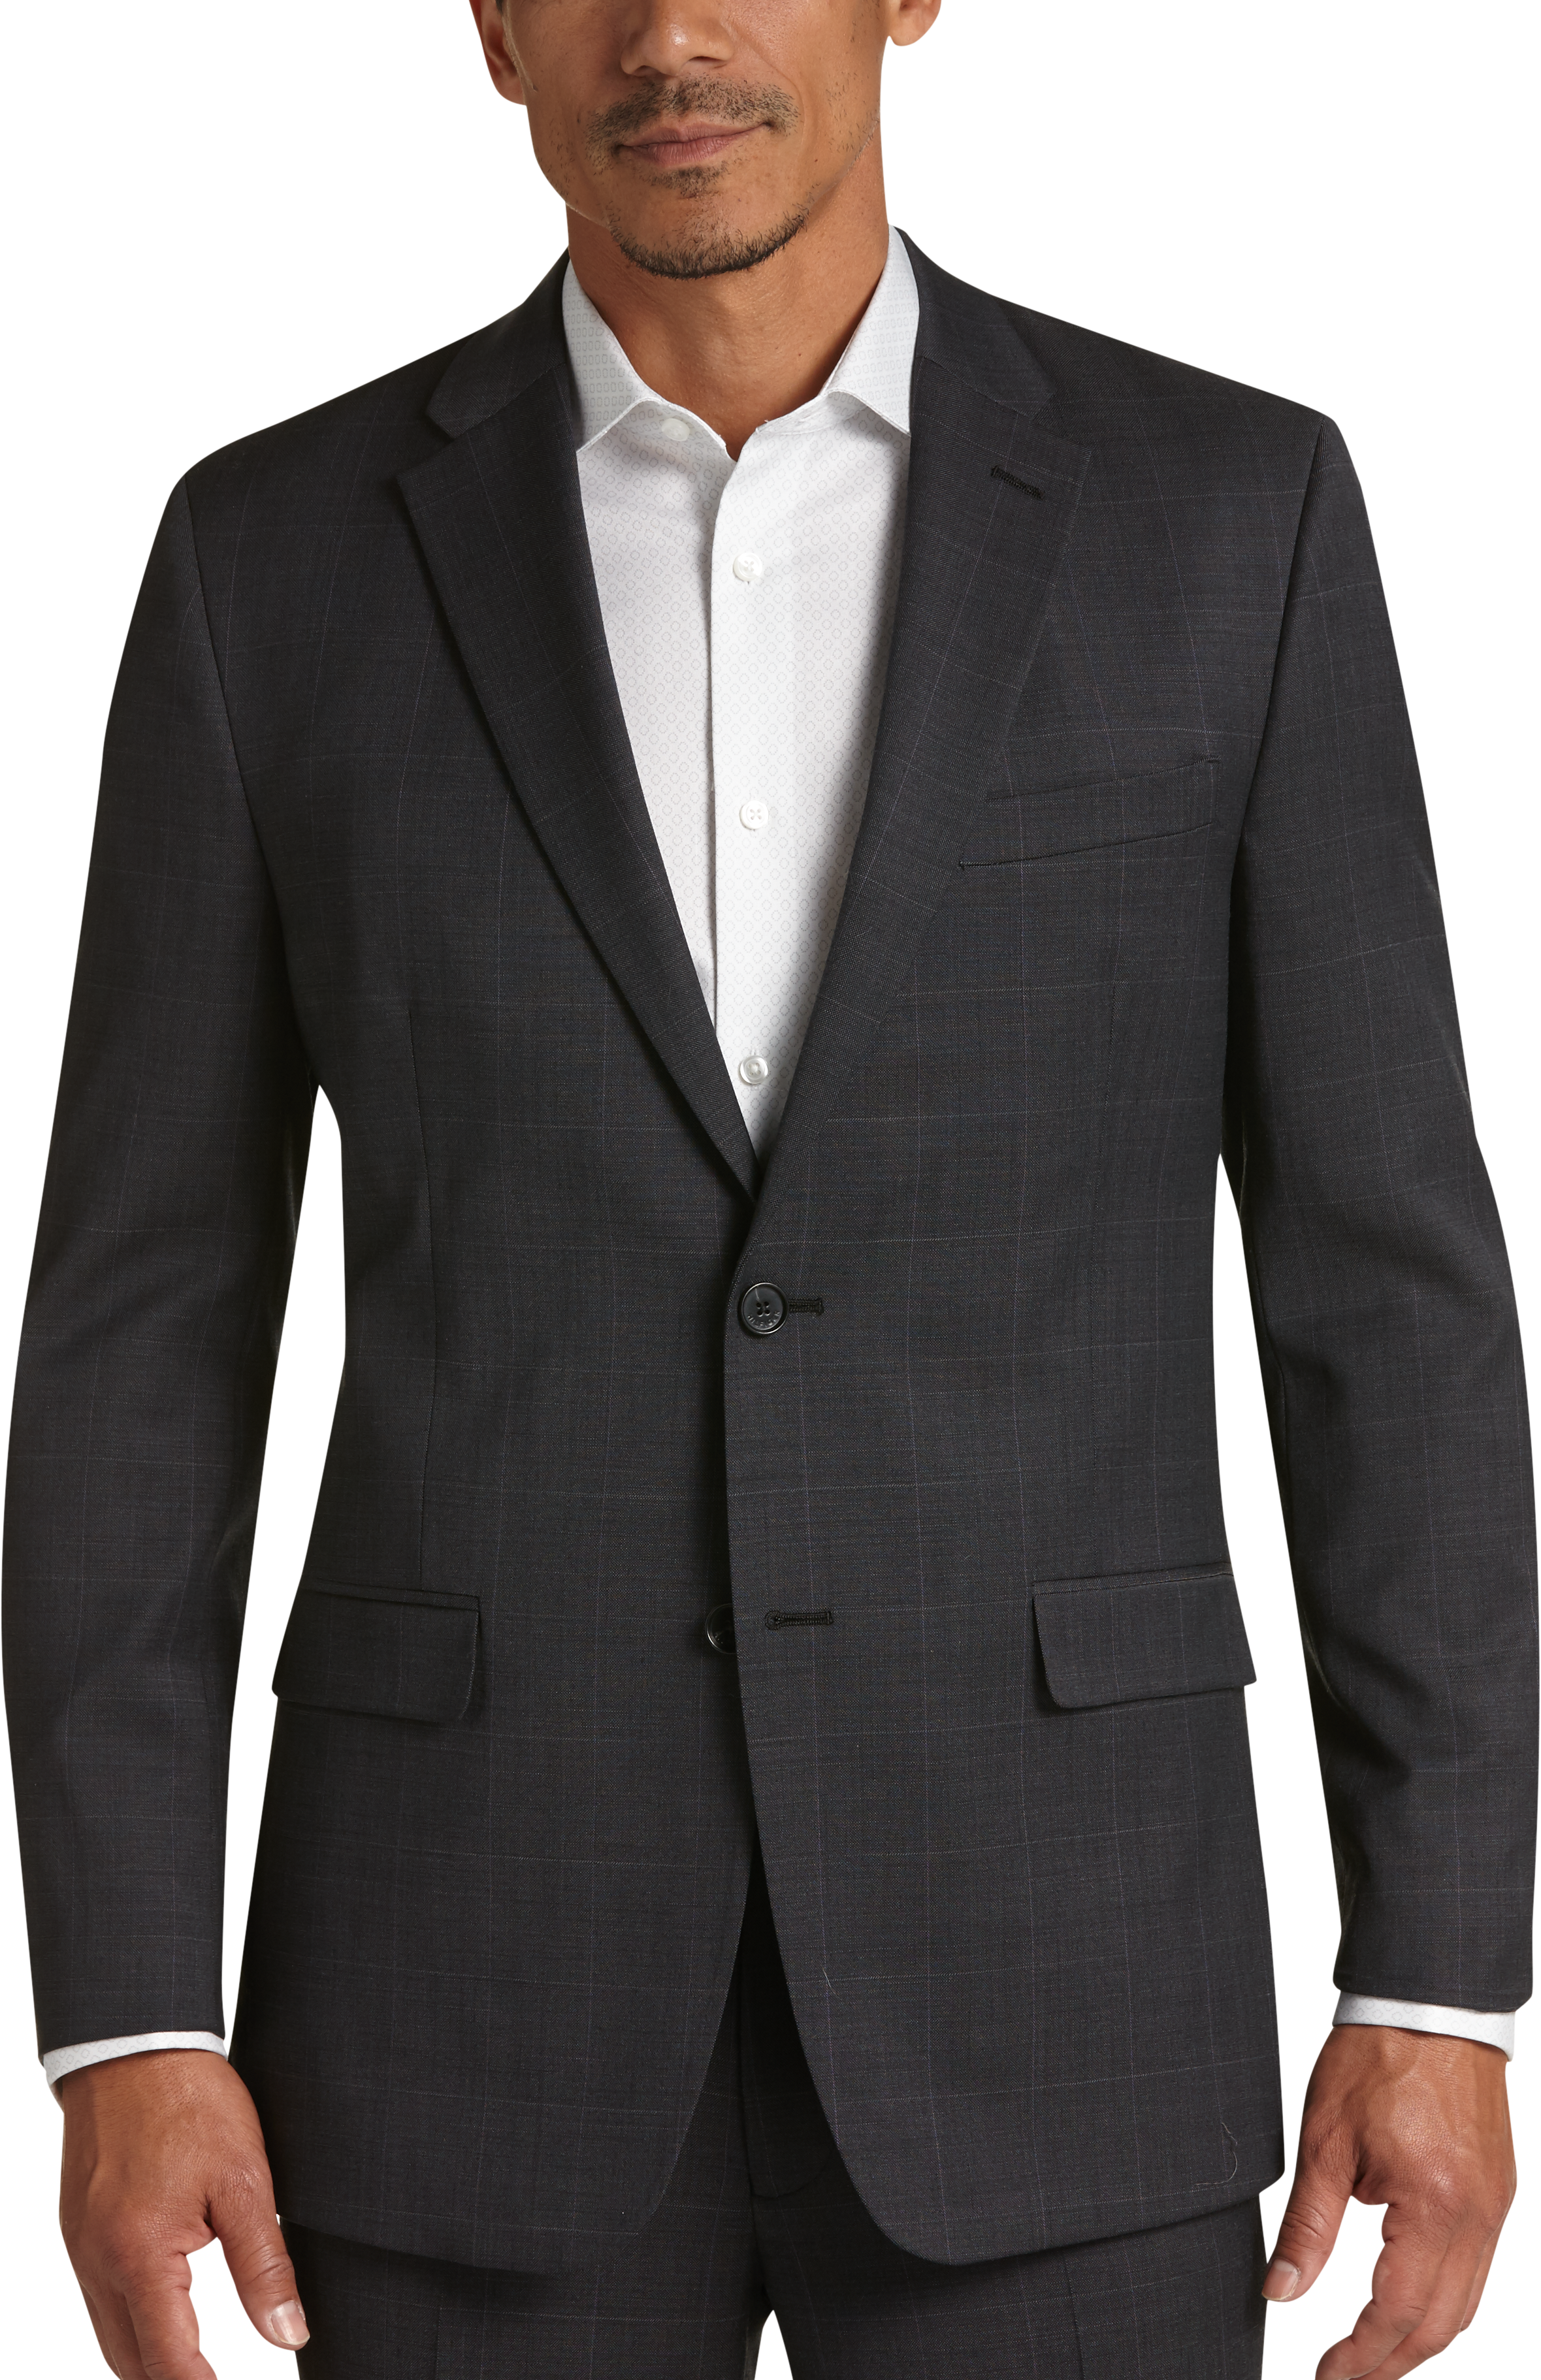 Tommy Hilfiger Charcoal Windowpane Plaid Slim Fit Suit - Men's Suits ...